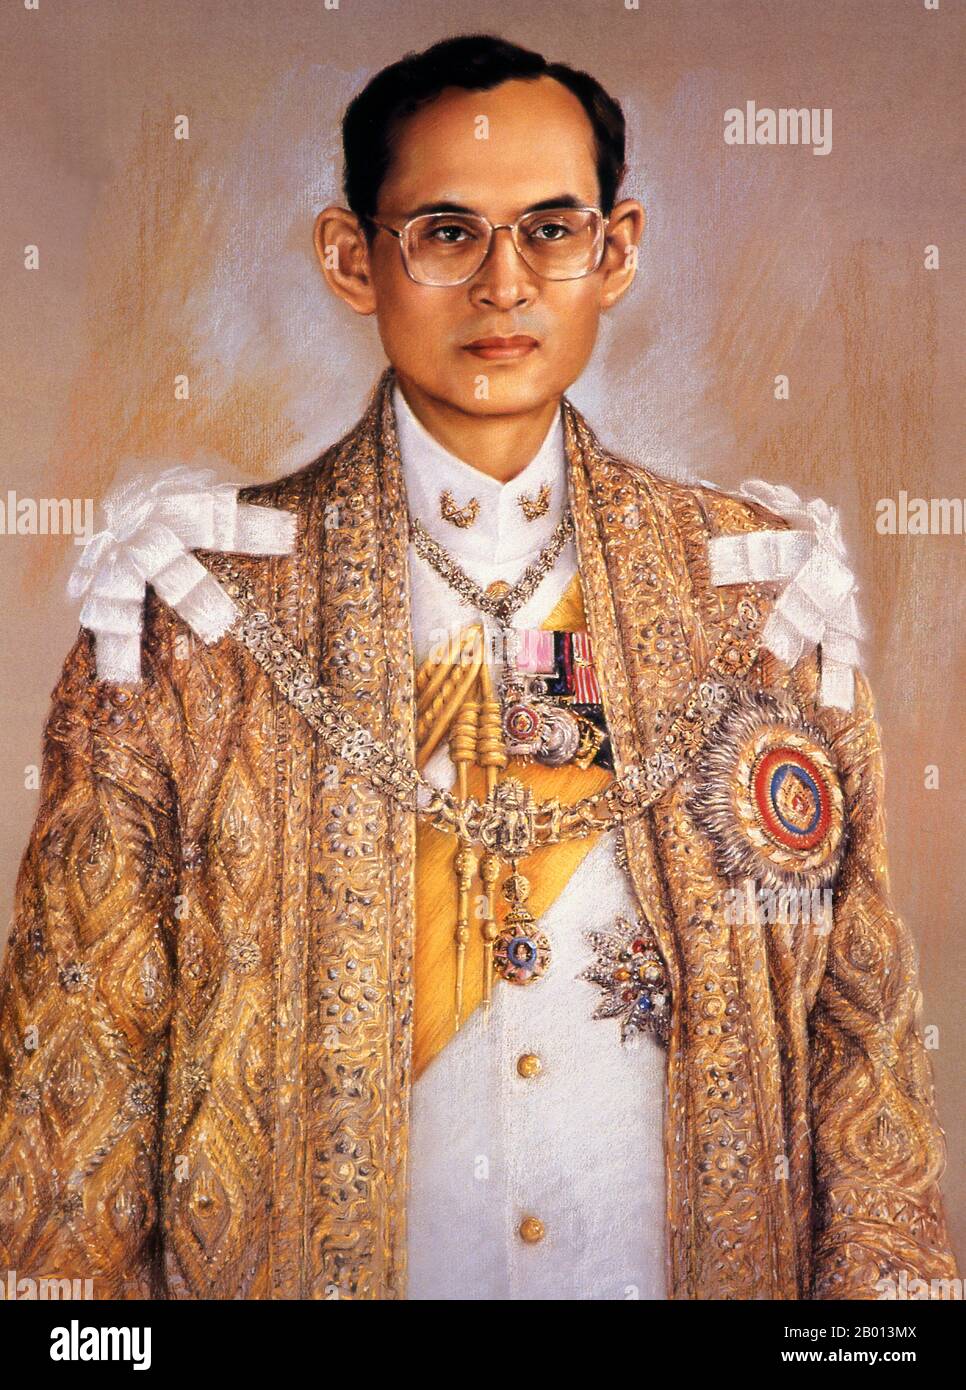 Thailand: König Rama IX., Bhumibol Adulyadej (5. Dezember 1927 – 13. Oktober 2016), 9. Monarch der Chakri-Dynastie. Öl auf Leinwand, 20. Jahrhundert. Bhumibol Adulyadej (Phumiphon Adunyadet) war der 9. König von Thailand. Er war bekannt als Rama IX, und innerhalb der thailändischen königlichen Familie und enge Mitarbeiter einfach als Lek. Nachdem er seit dem 9. Juni 1946 regierte, war er einer der dienstältesten Staatsoberhäupter der Welt und der am längsten regierende Monarch in der thailändischen Geschichte. Stockfoto